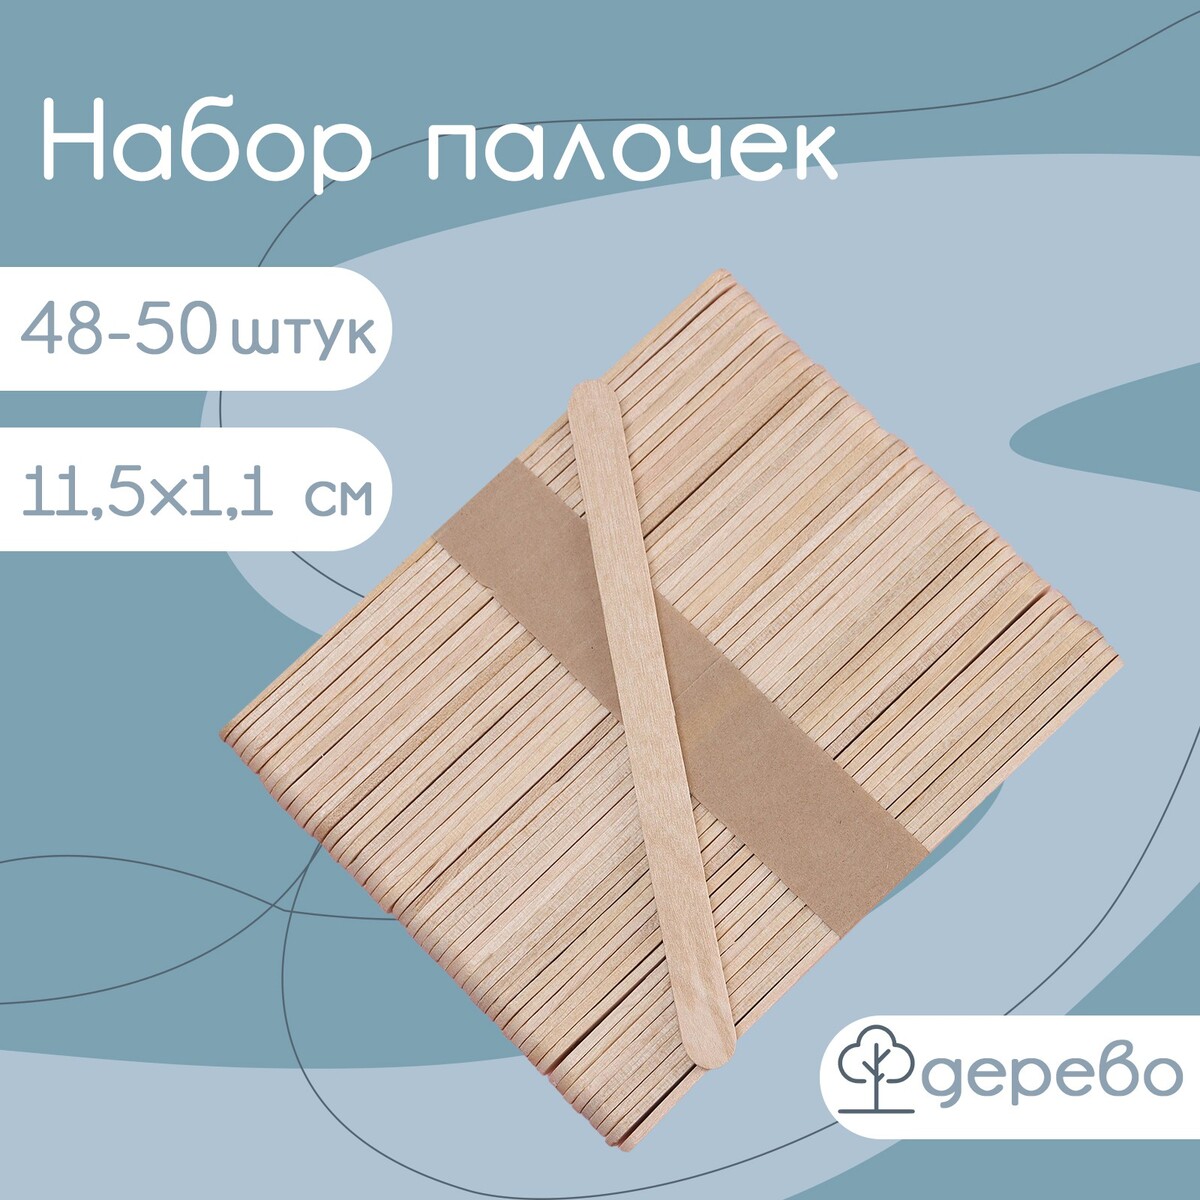 Набор деревянных палочек для мороженого, 11,5×1,1 см, 48-50 шт набор трафаретов для макияжа и коррекции бровей 3 шт